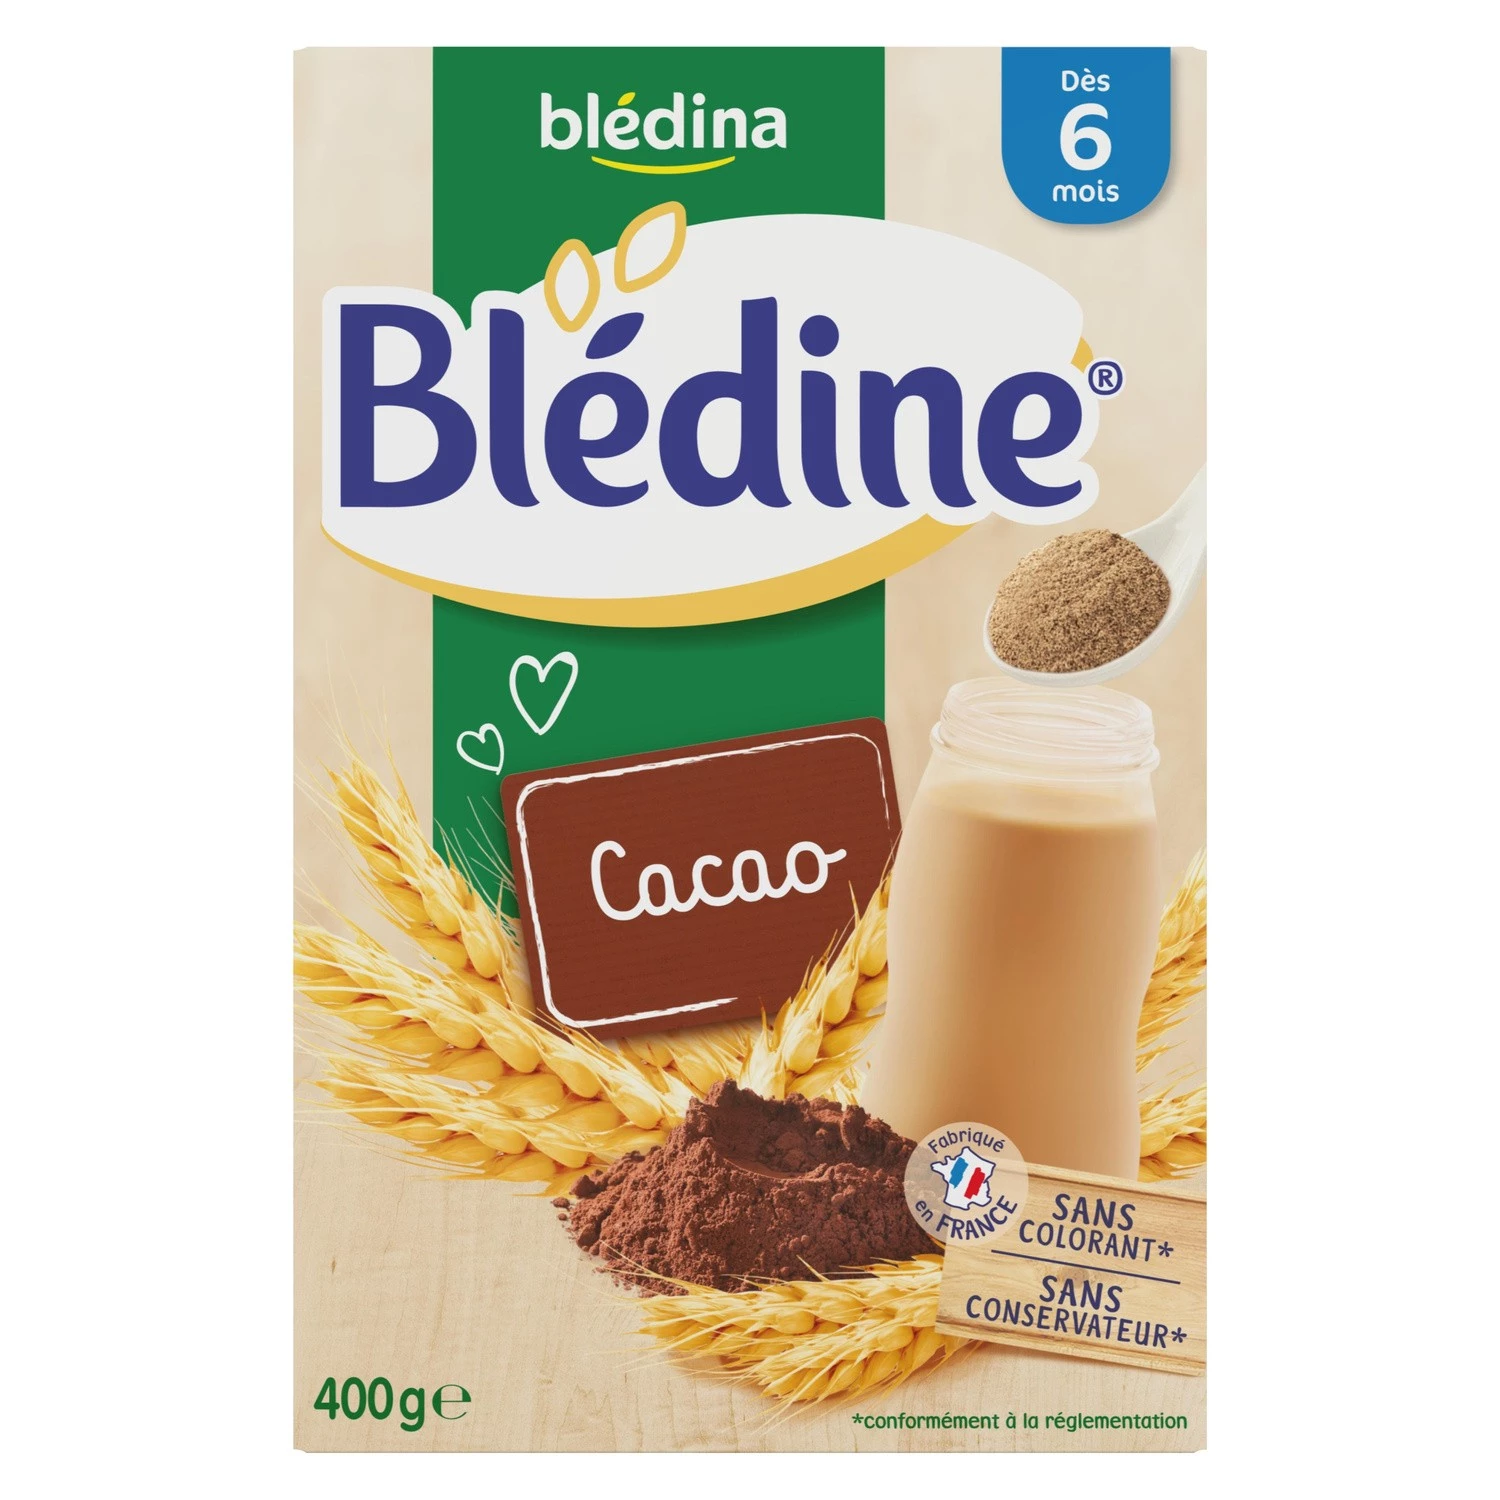 Bledine cereales bebe cacao a partir de 6 meses 400g - BLEDINA